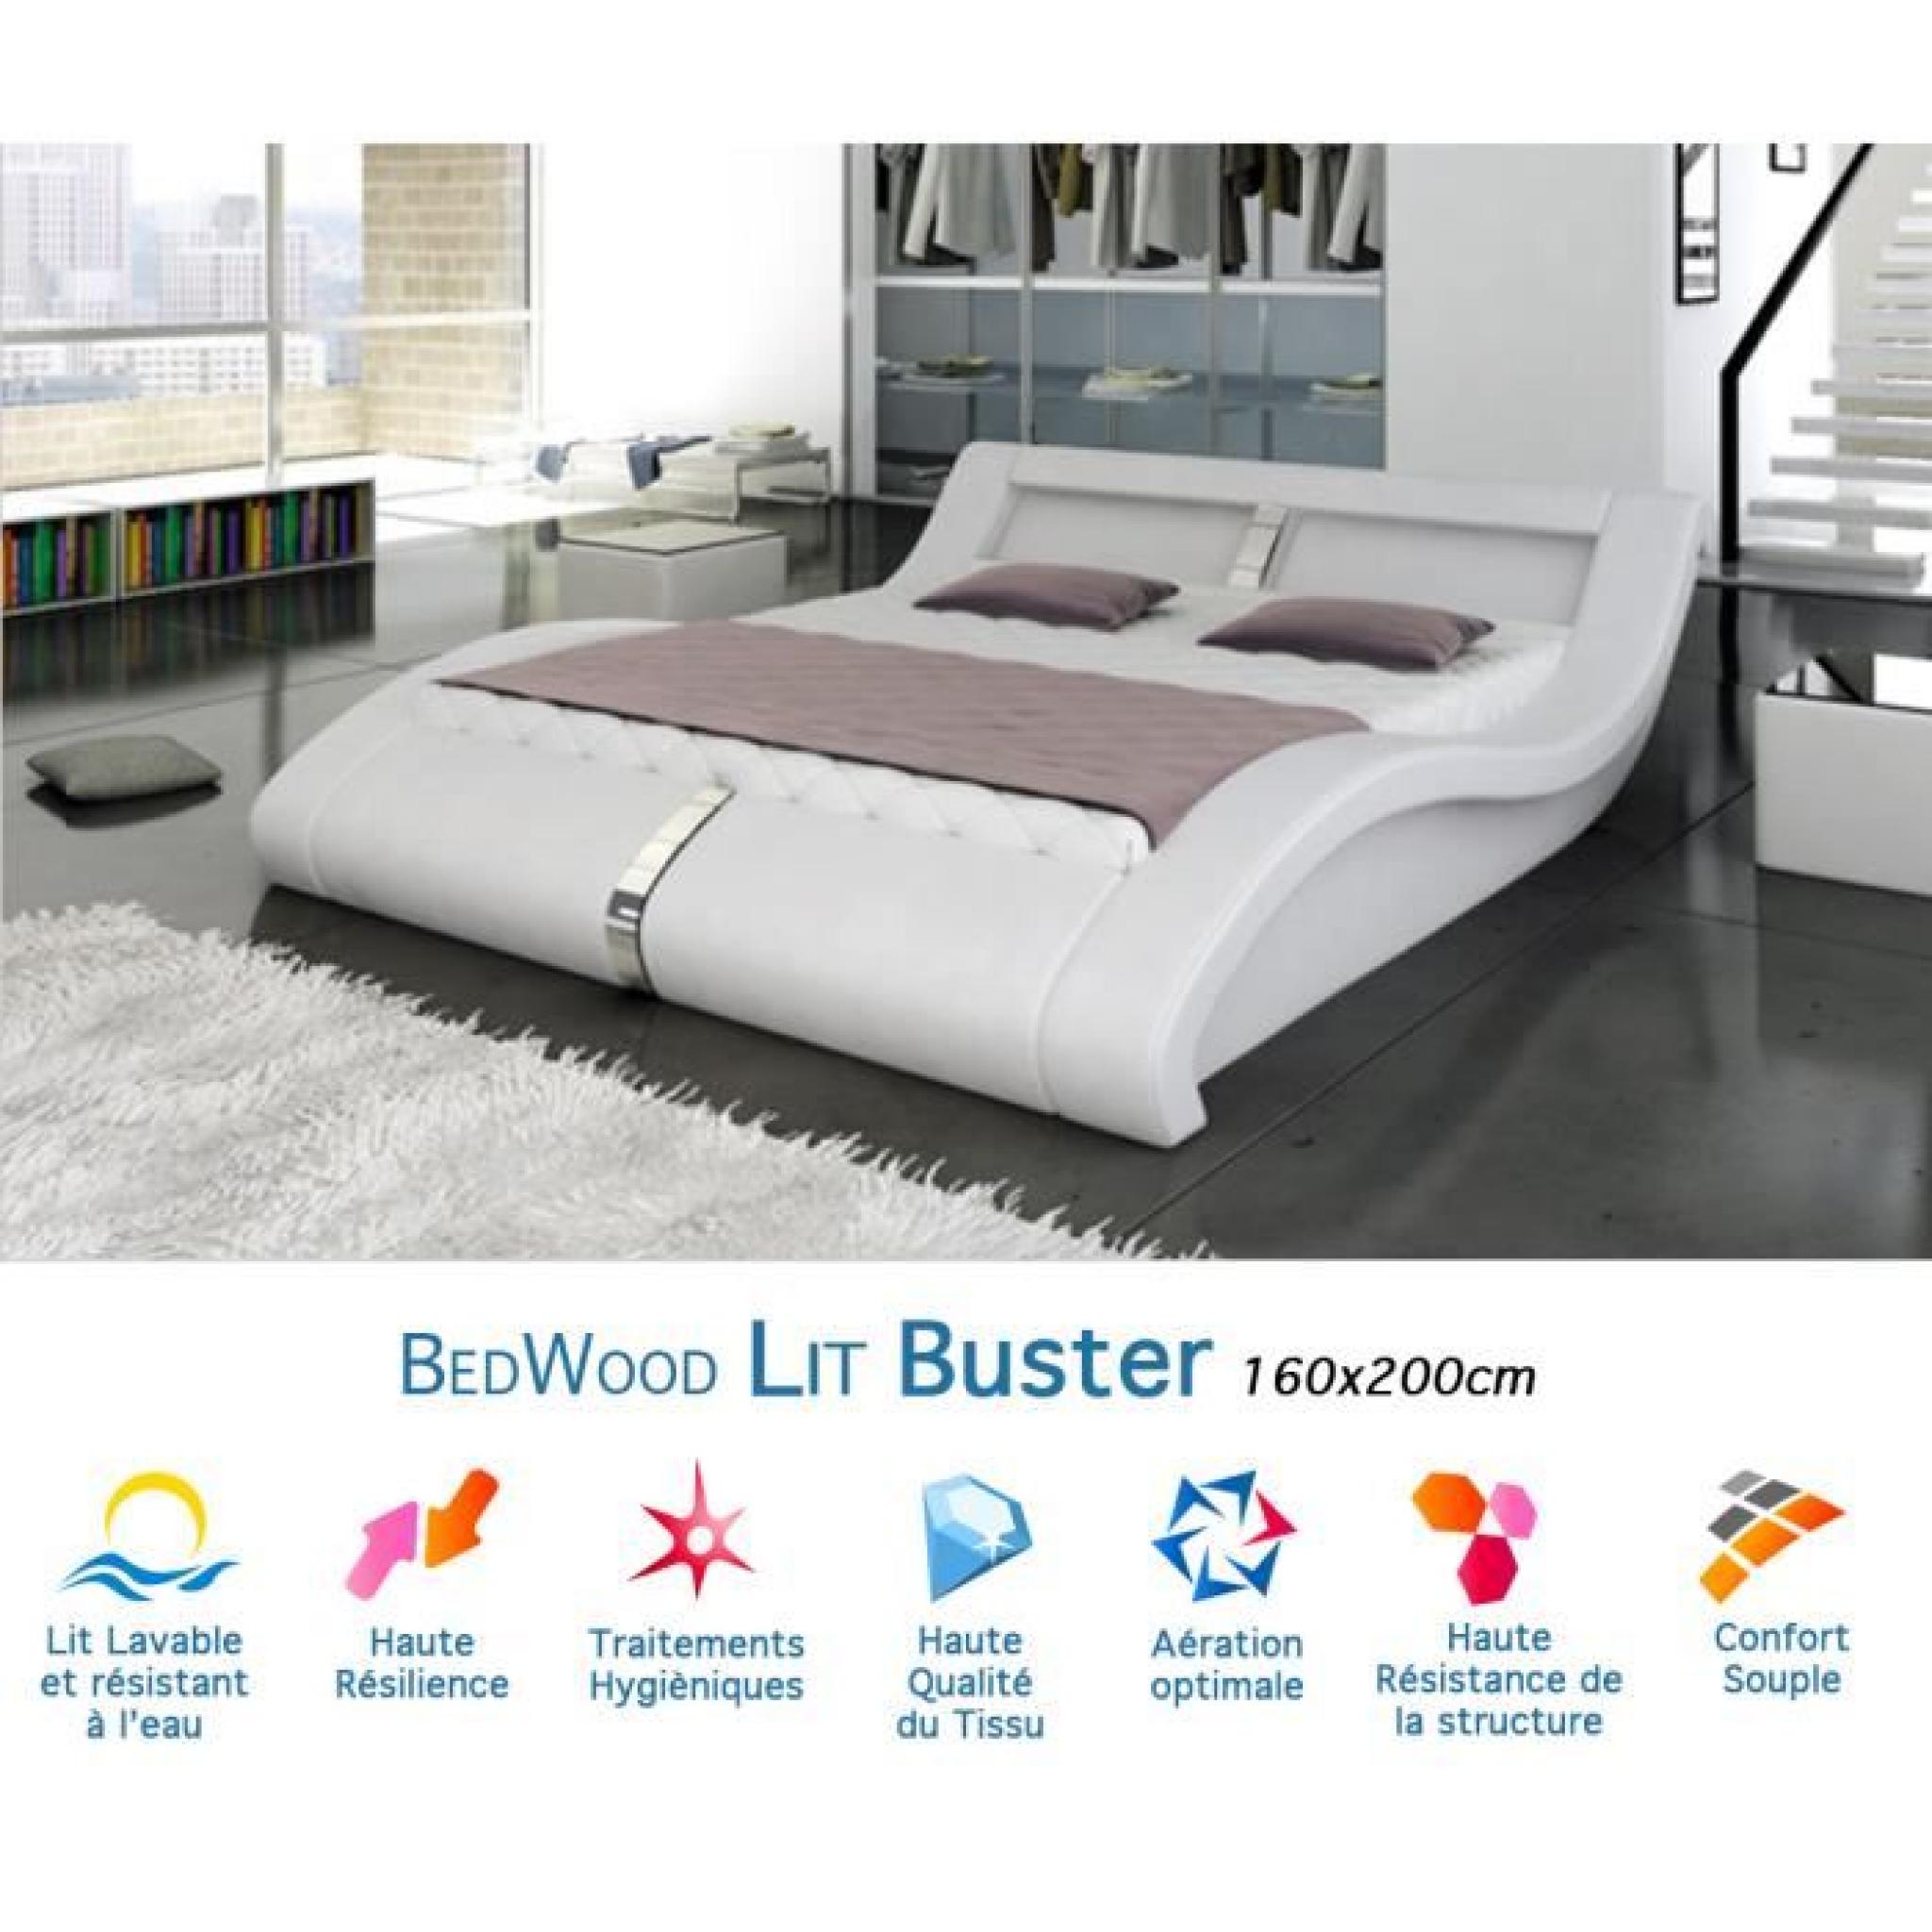 Lit Design Bedwood Buster 160x200cm